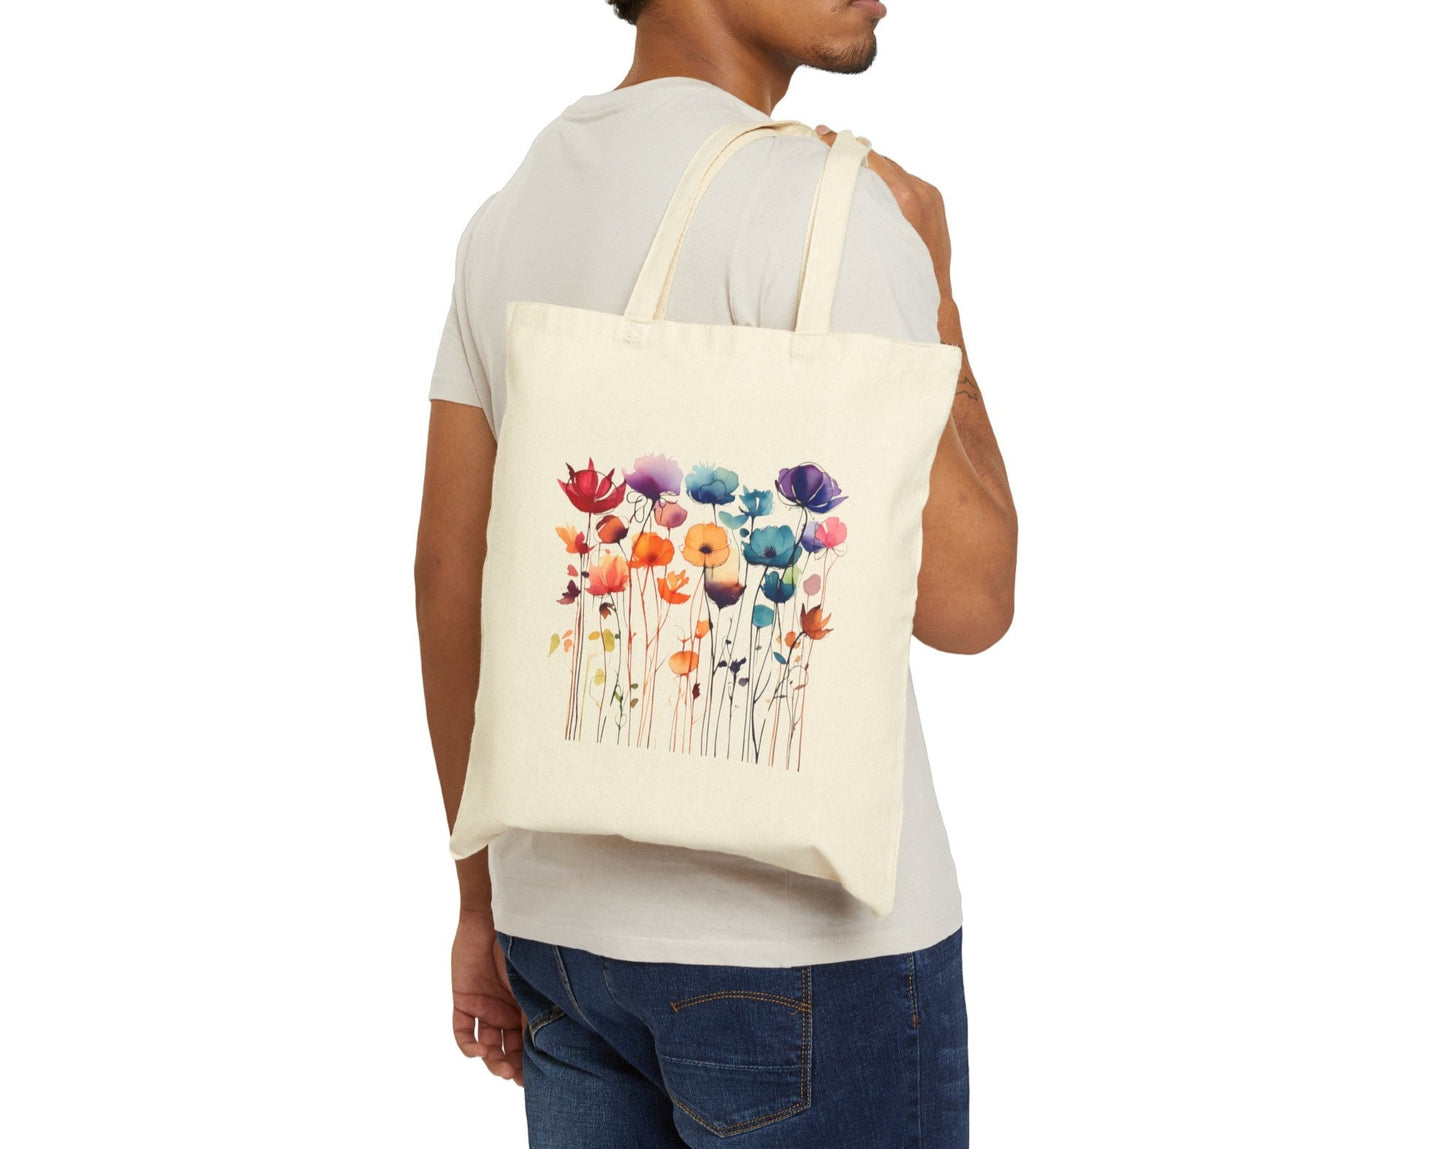 Watercolor wildflowers tote bag